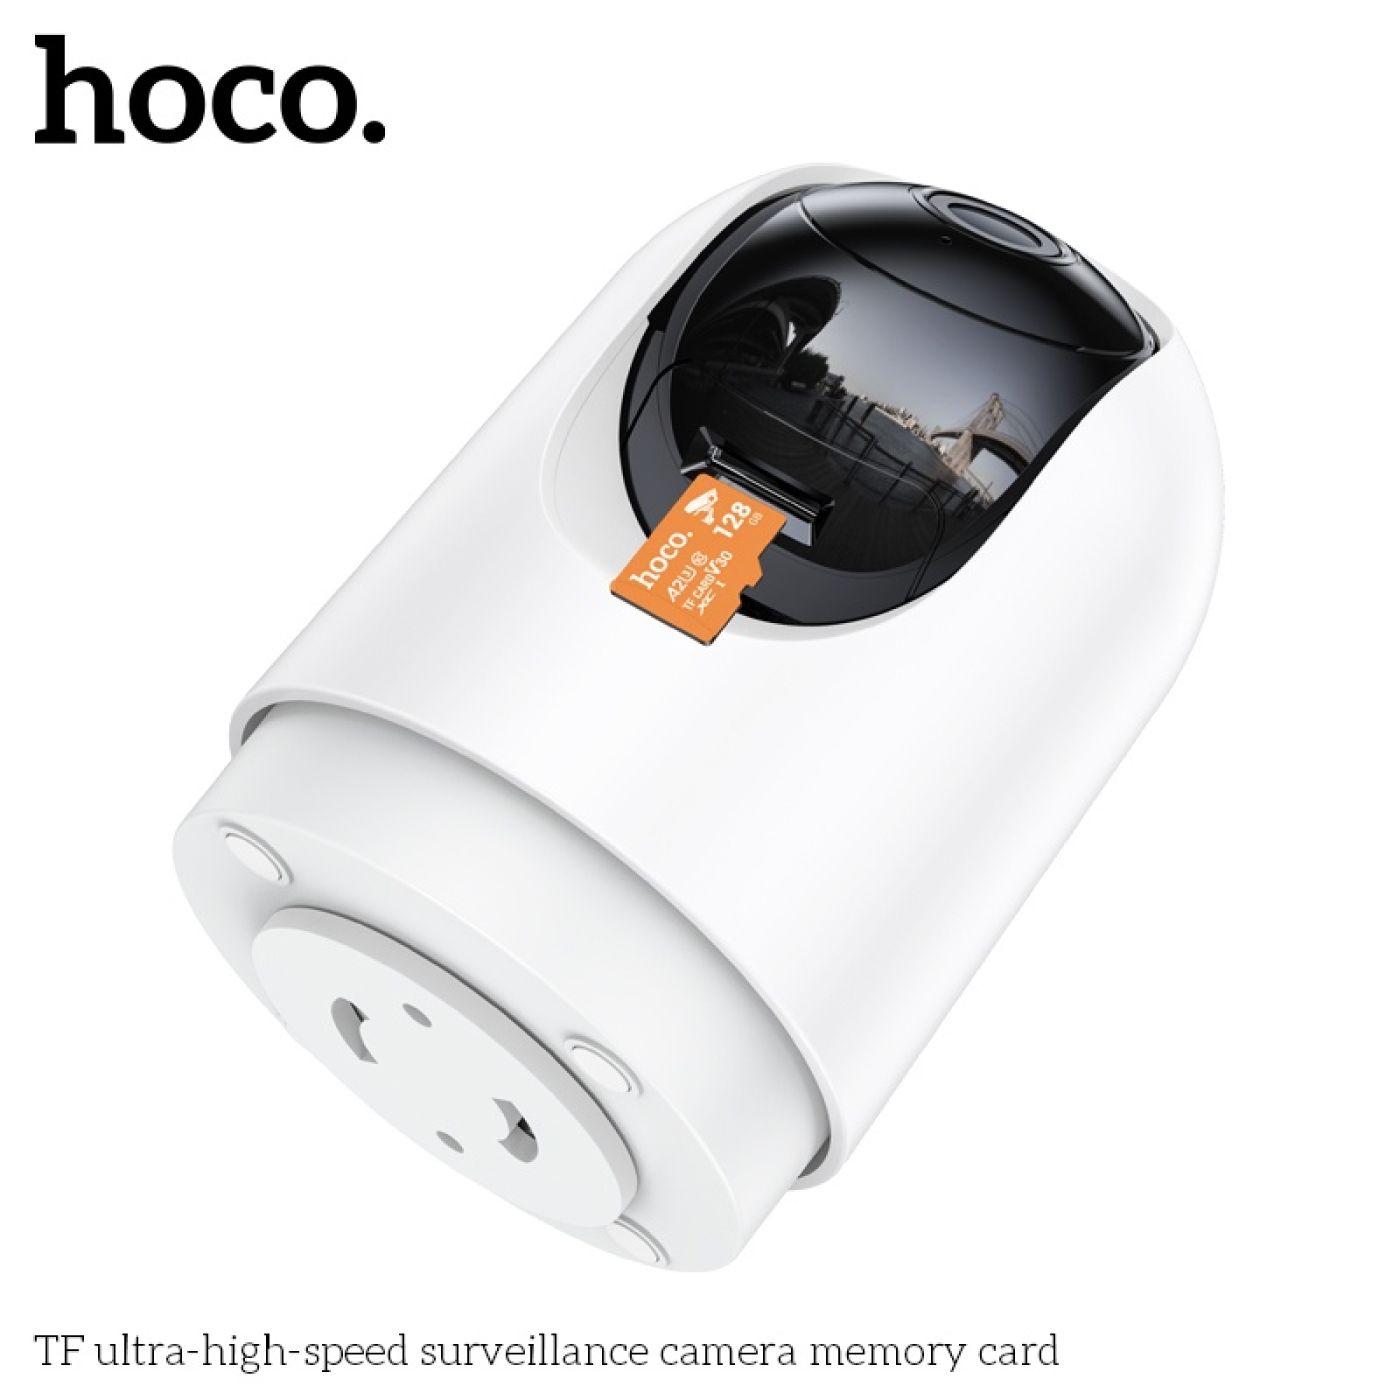 Thẻ nhớ chuyên dùng TF memory Card cao cấp cho Camera giám sát tốc độ cao nhanh 64GB Hoco